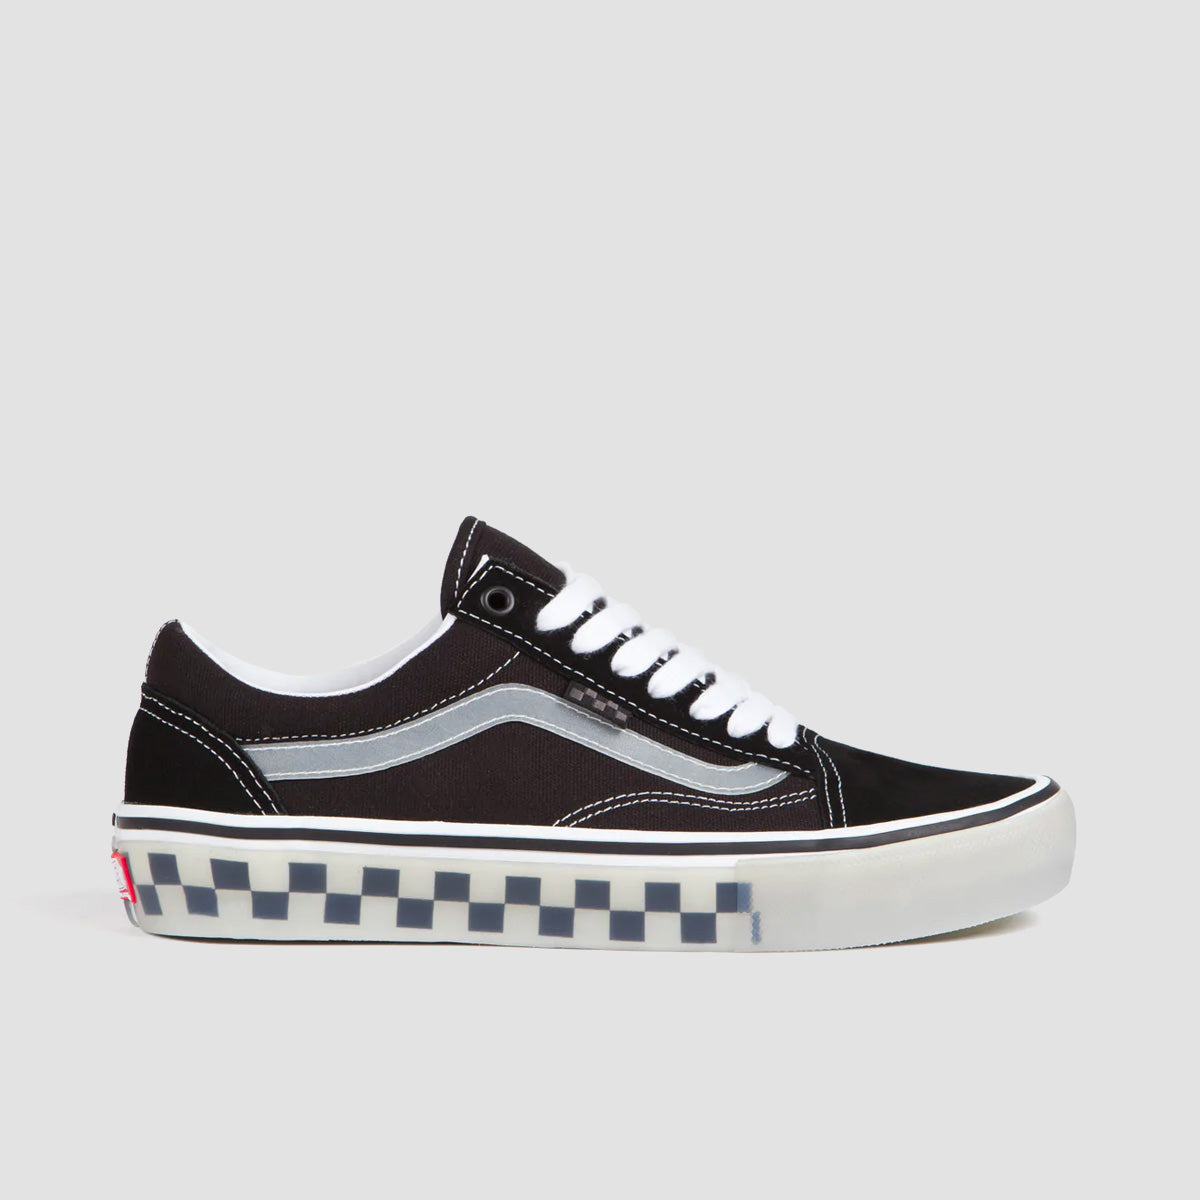 Vans Skate Old Skool Shoes - Translucent Rubber Black/Clear